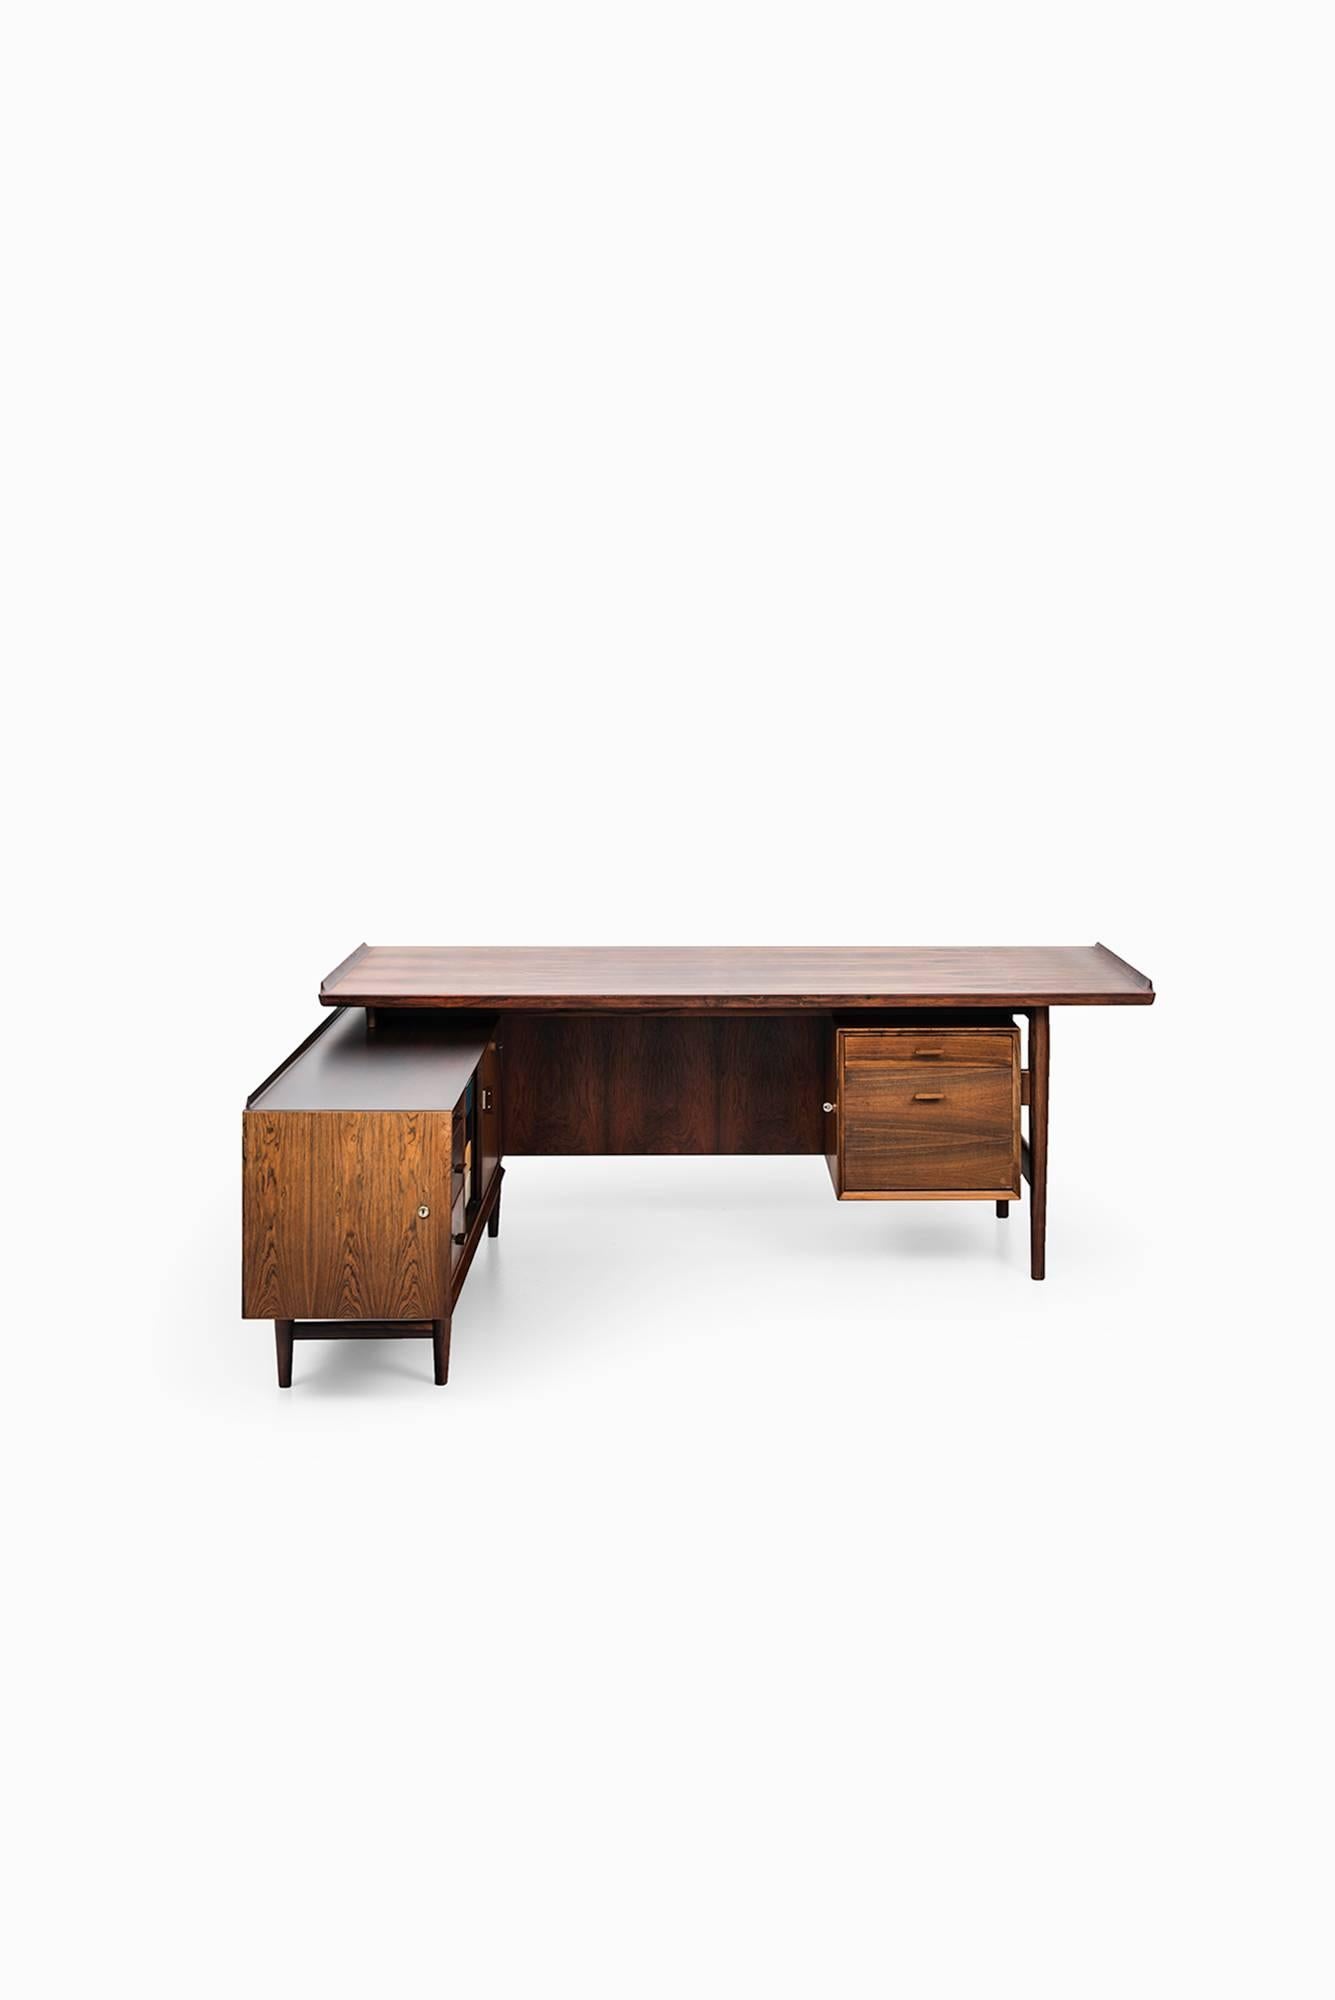 Danish Arne Vodder L-shaped desk with sideboard model 209